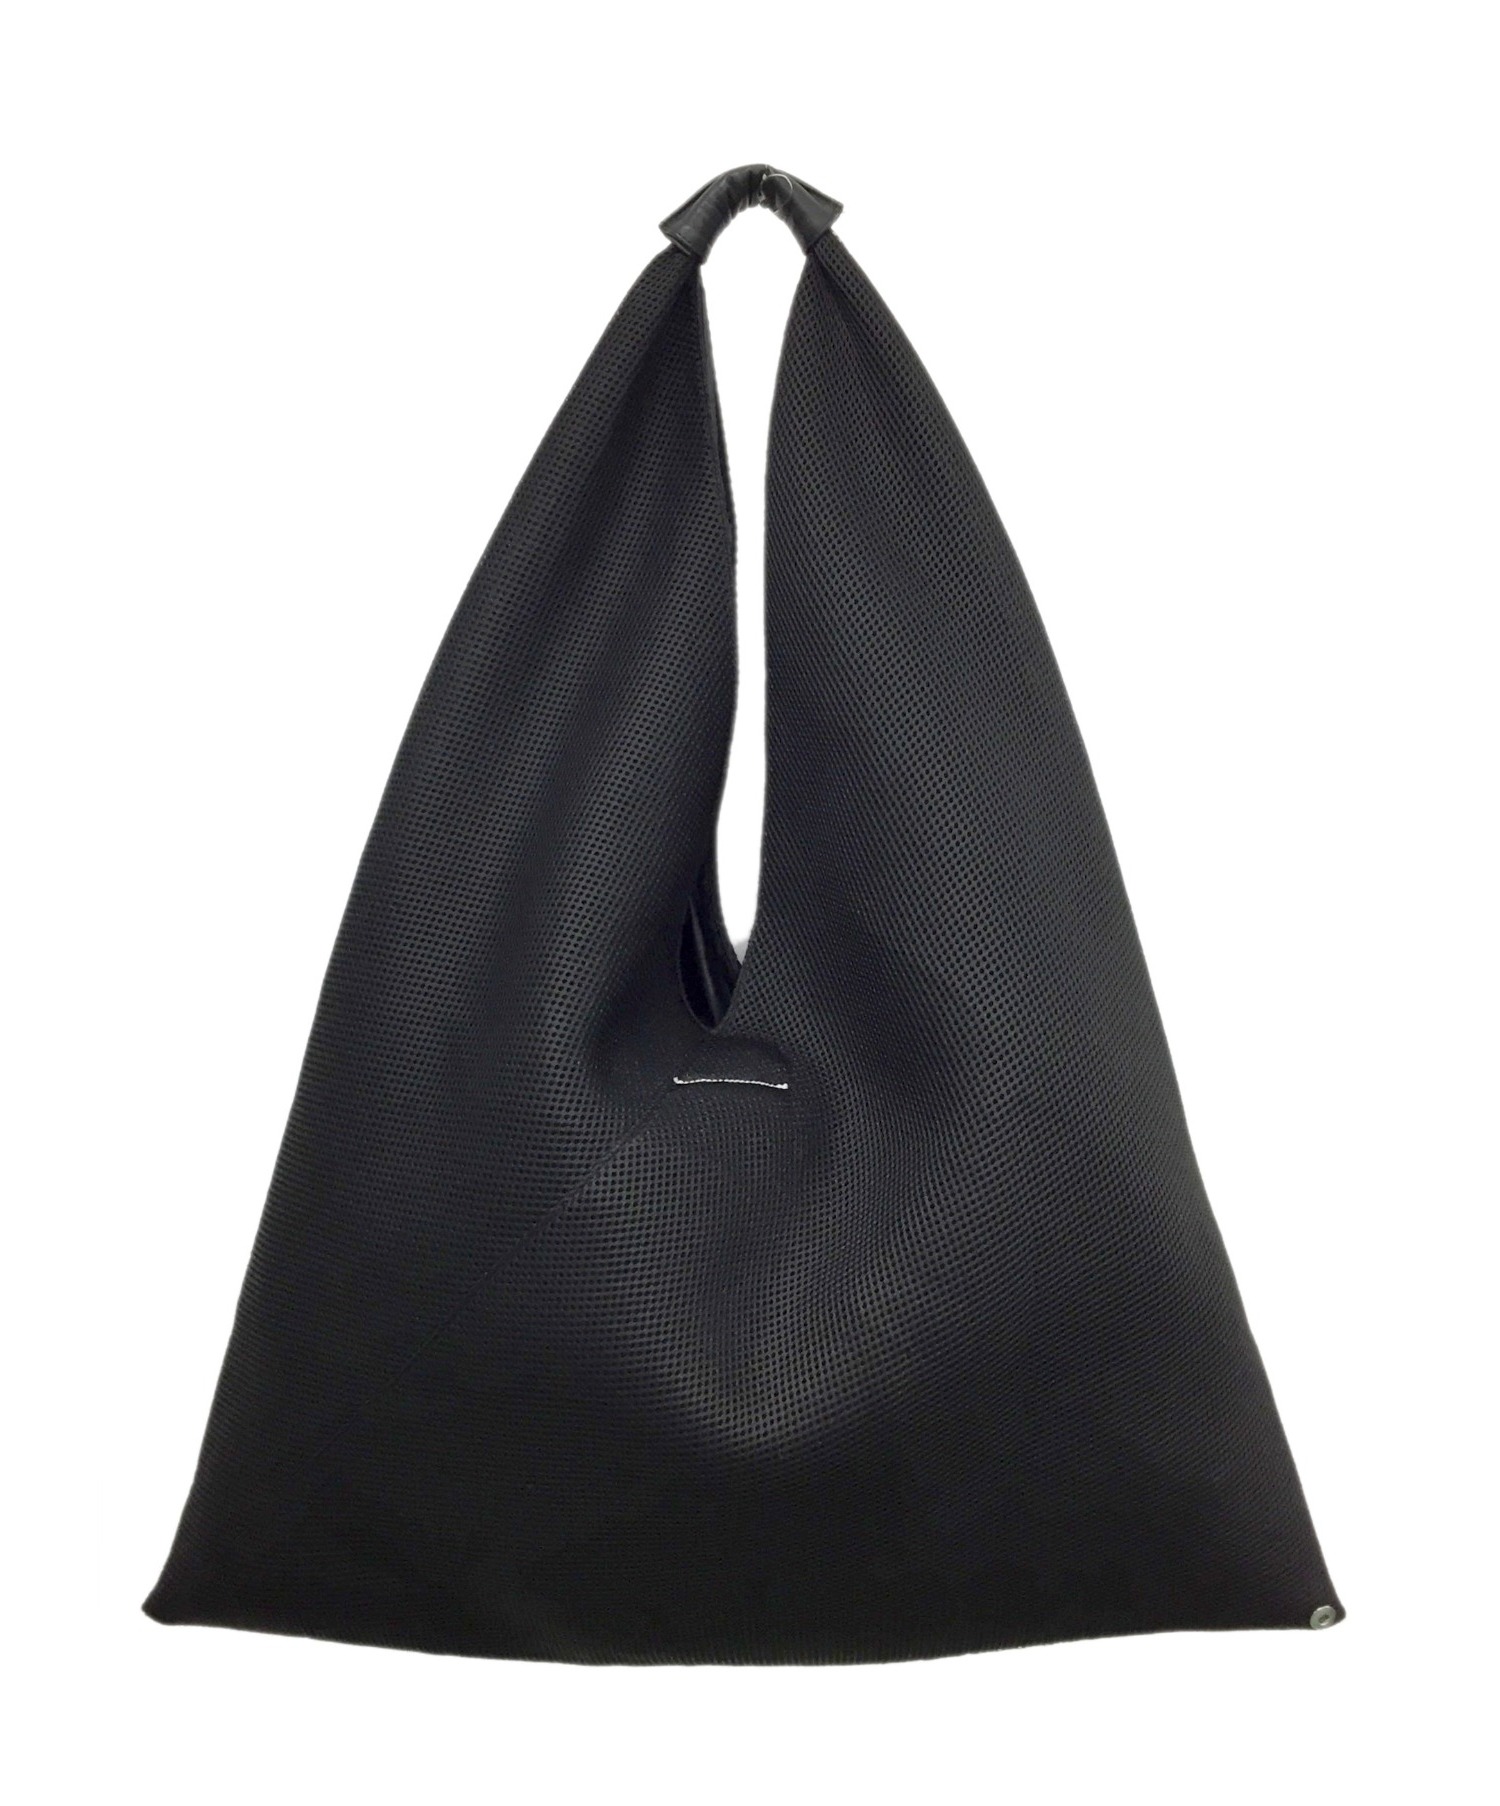 MM6 Maison Margiela (エムエムシックスメゾンマルジェラ) Japanese Bag Net Fabric Large ブラック